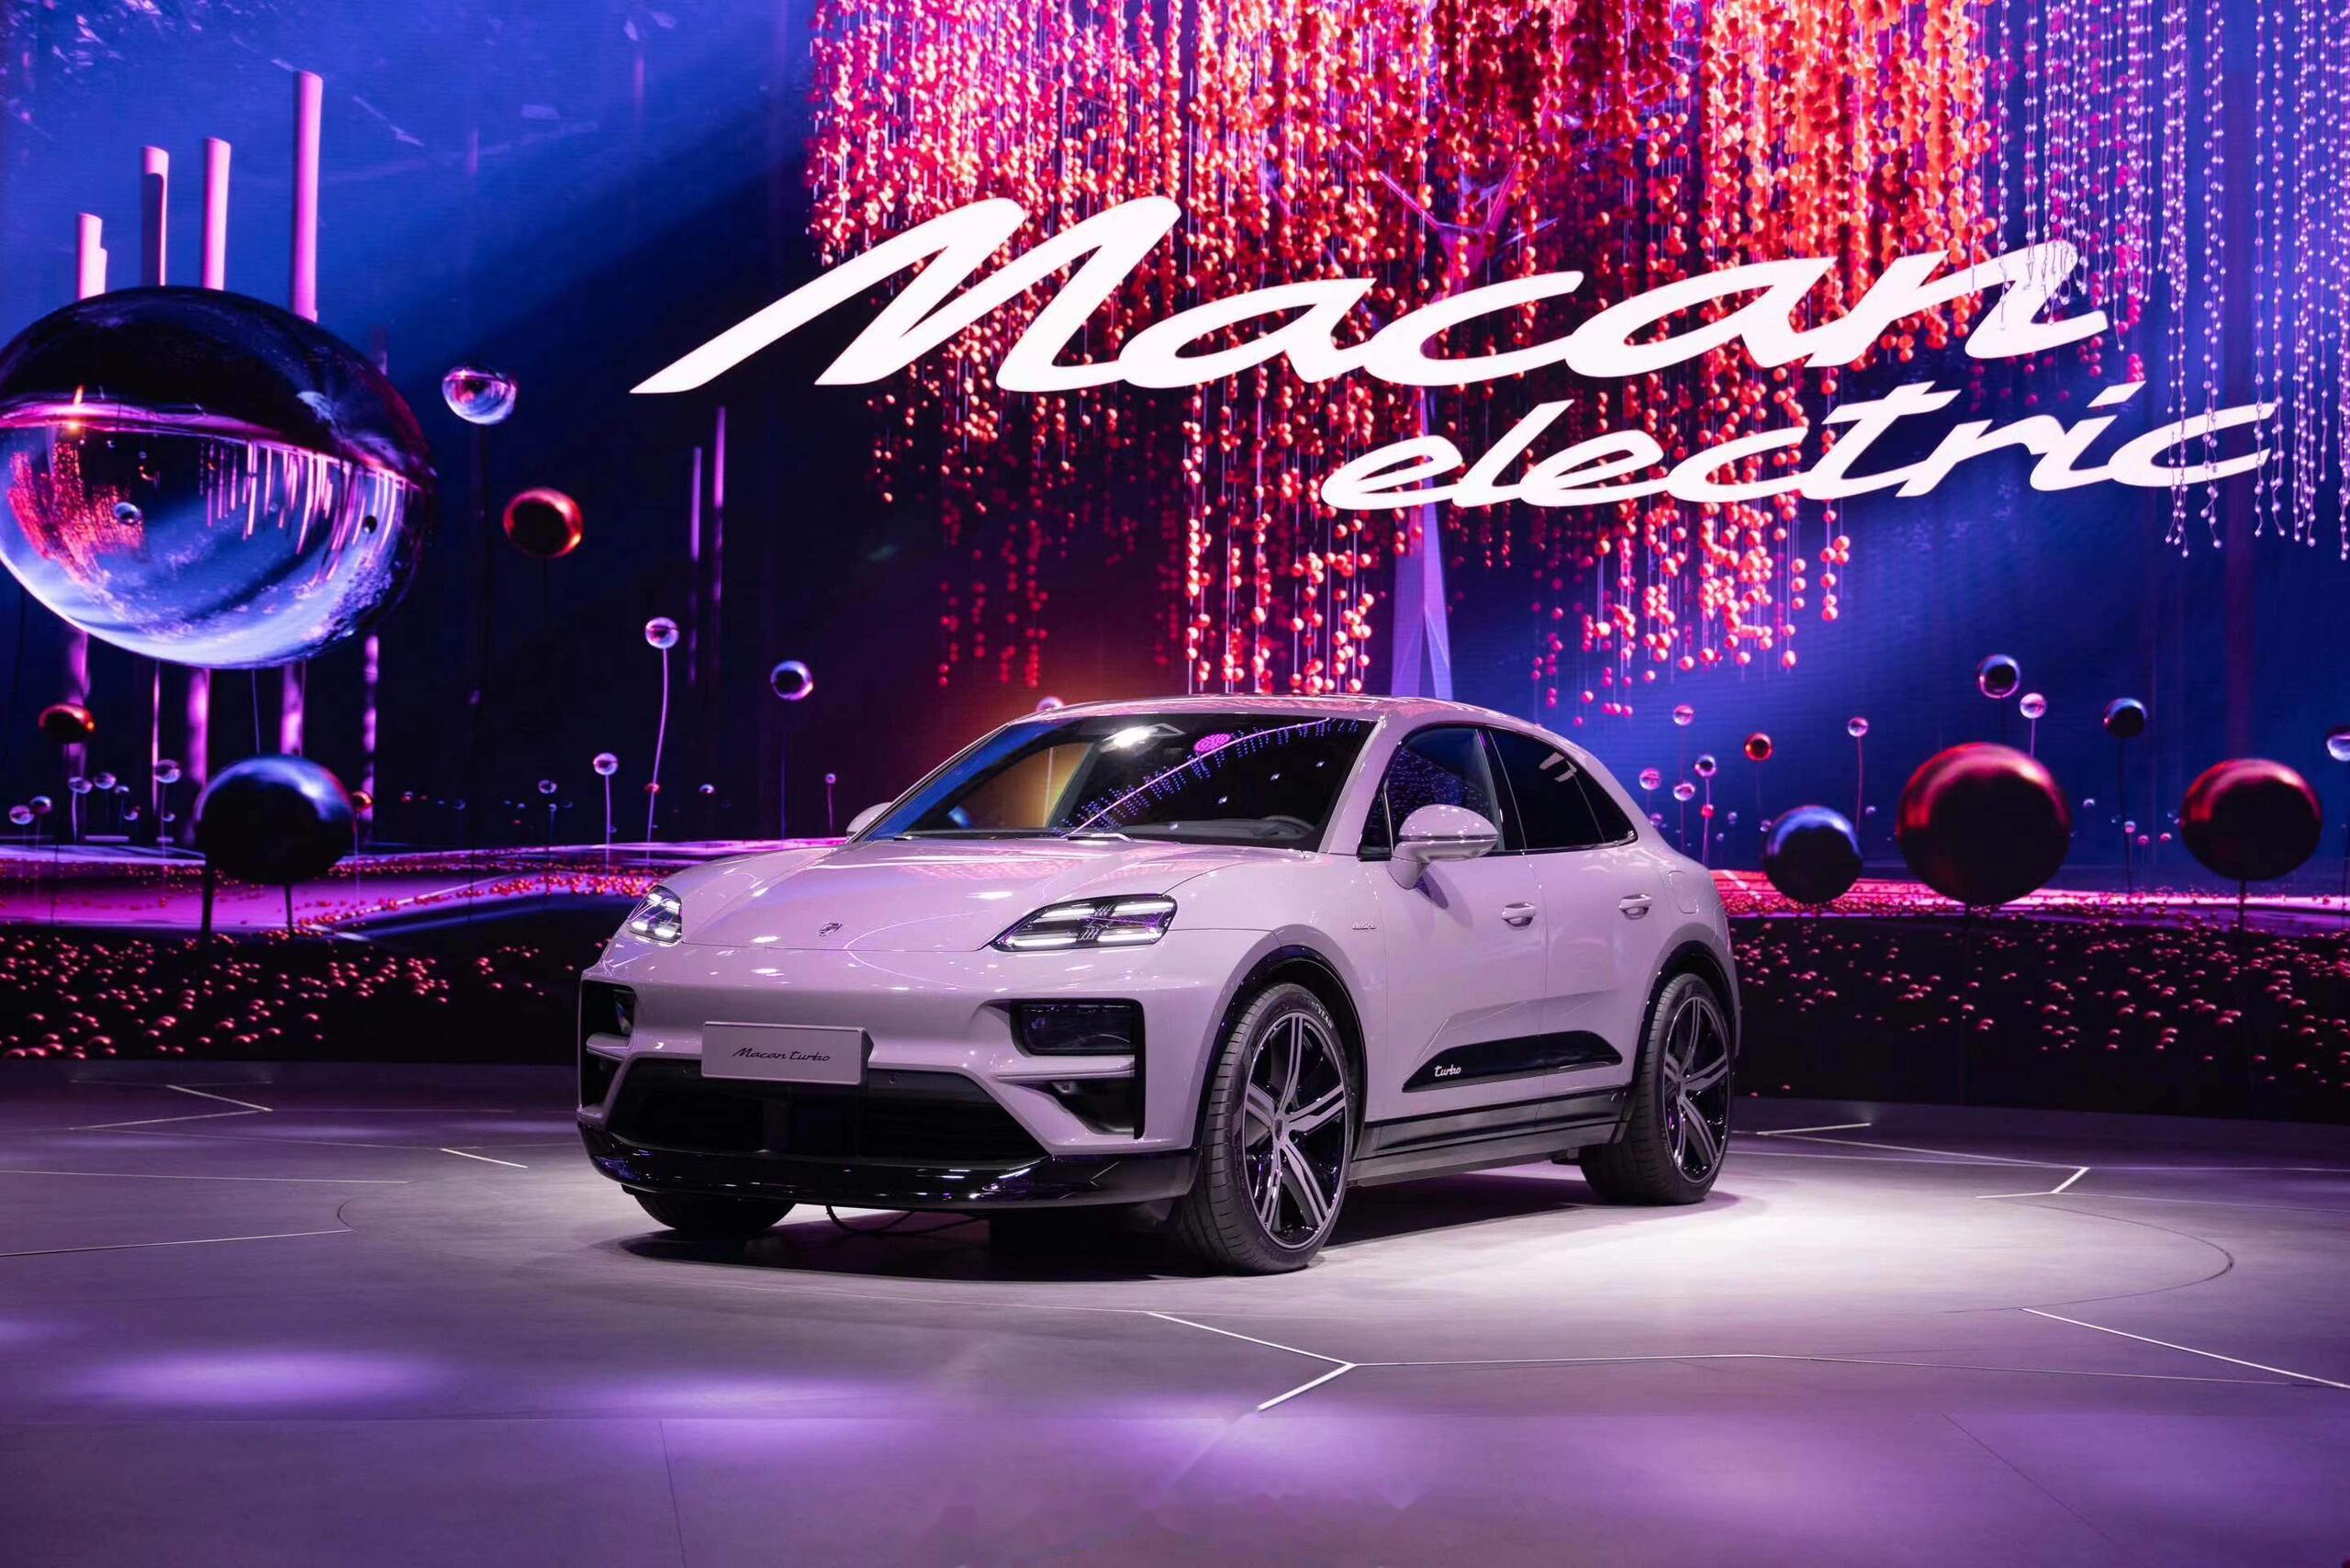 macan电动版是一款顺应市场趋势的新车型,它在北京车展中首次亮相中国